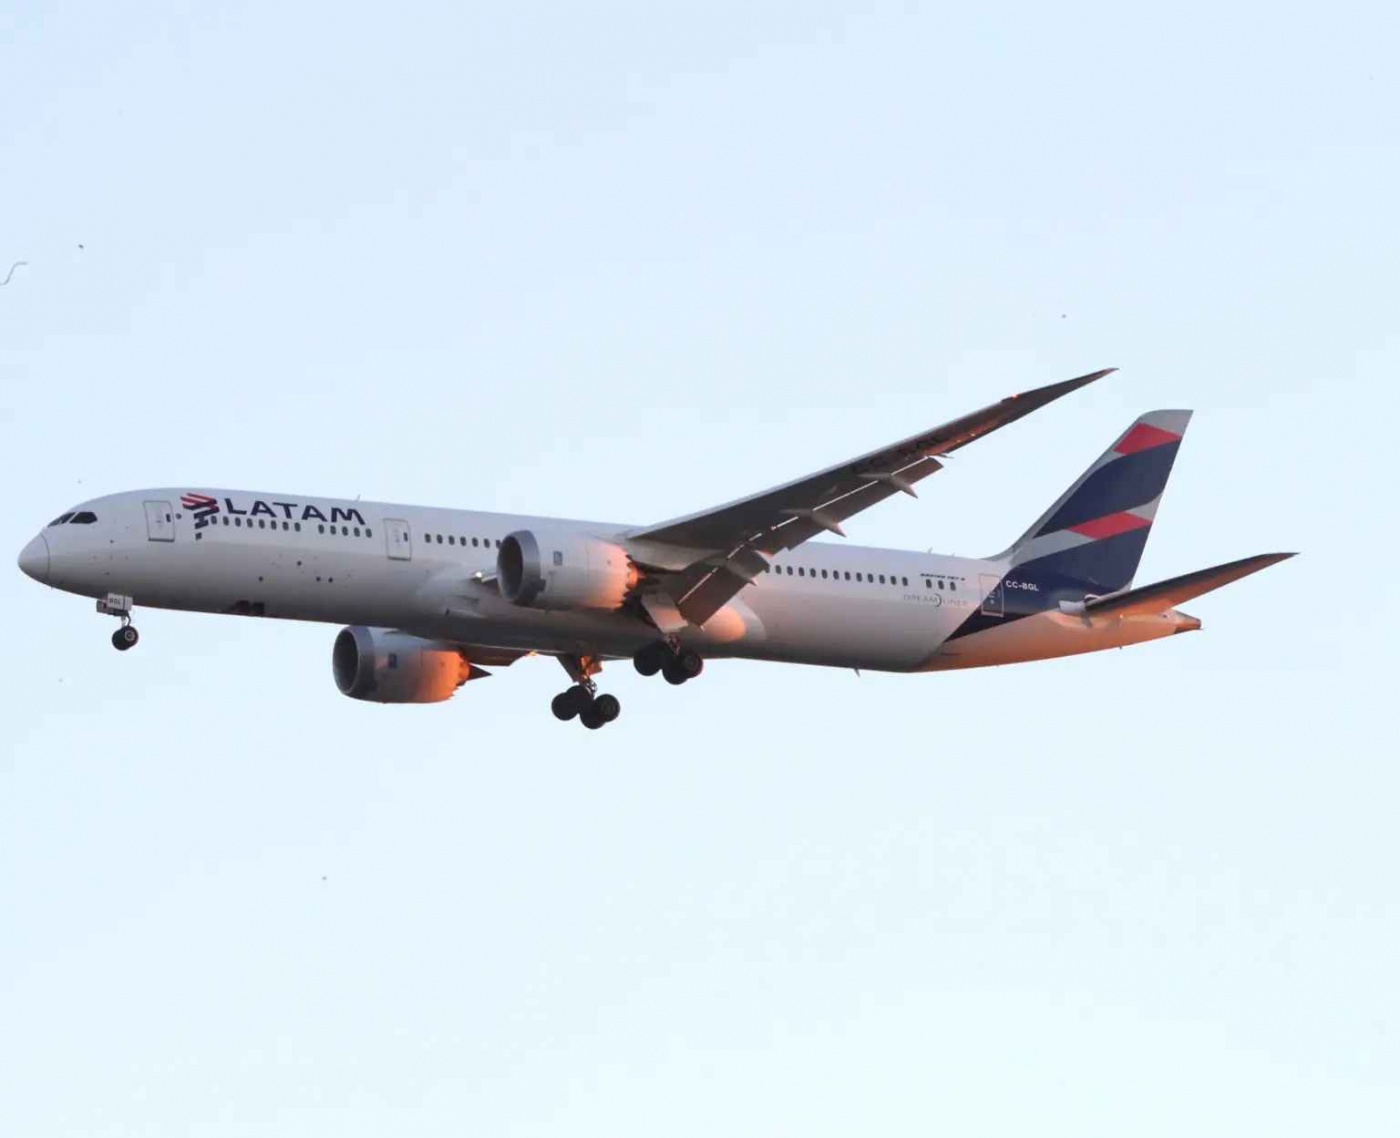 Двигатель самолета загорелся во время полета из-за птицы: шокированные пассажиры сняли видео